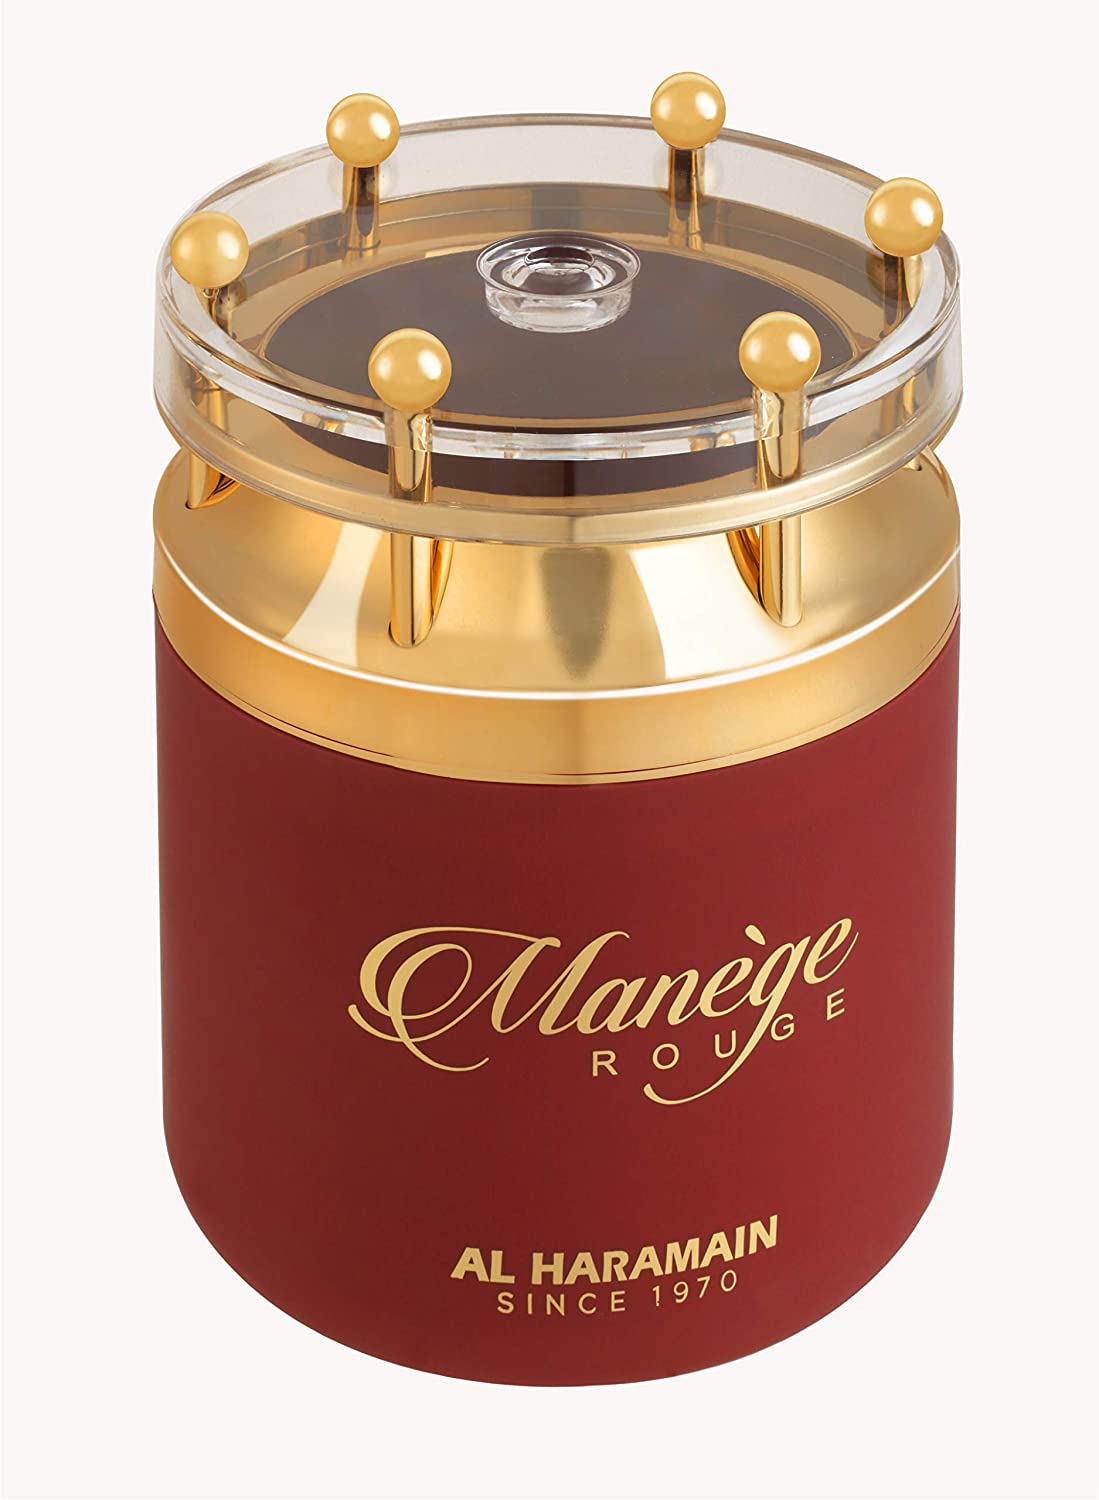 Al Haramain Manege Rouge Eau de PARFUM Unisex, 75 ml, 2.5 oz